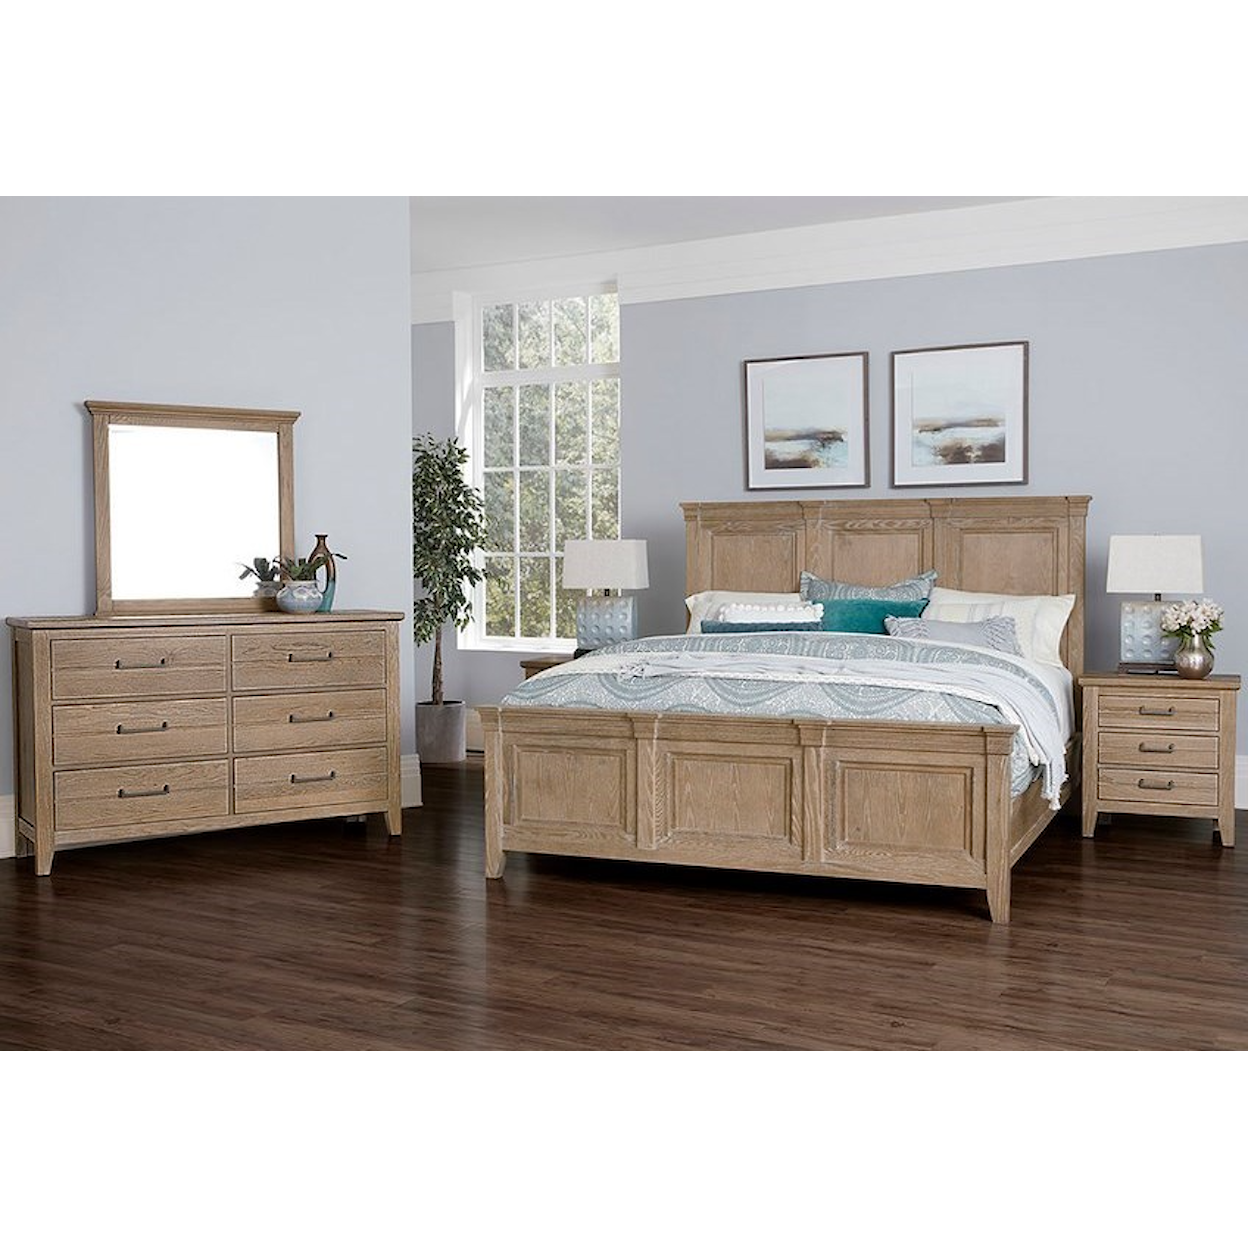 Laurel Mercantile Co. Passageways 4-Piece Bedroom Set